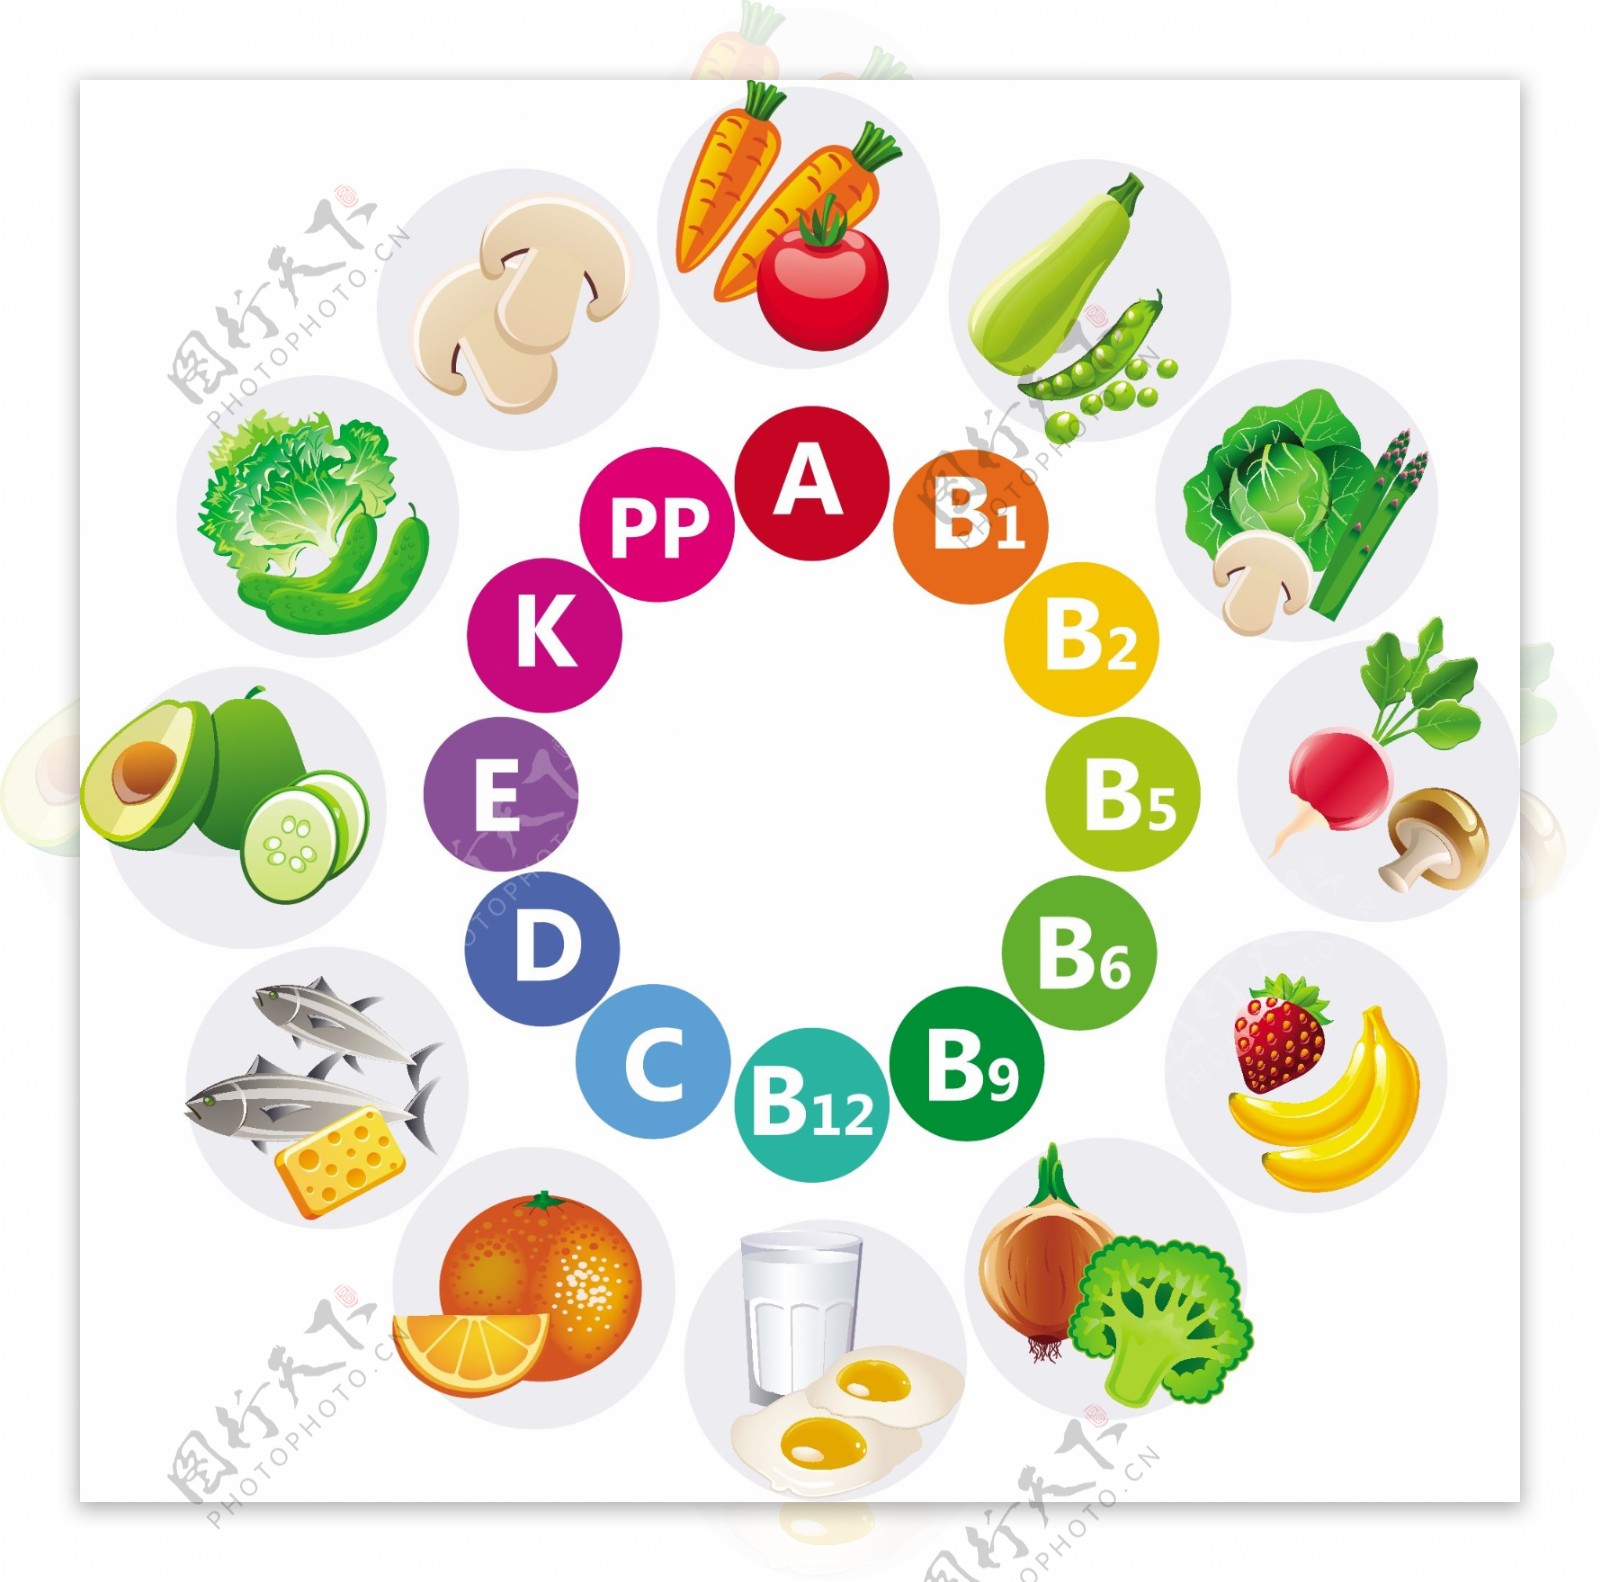 多种蔬菜水果维生素矢量图